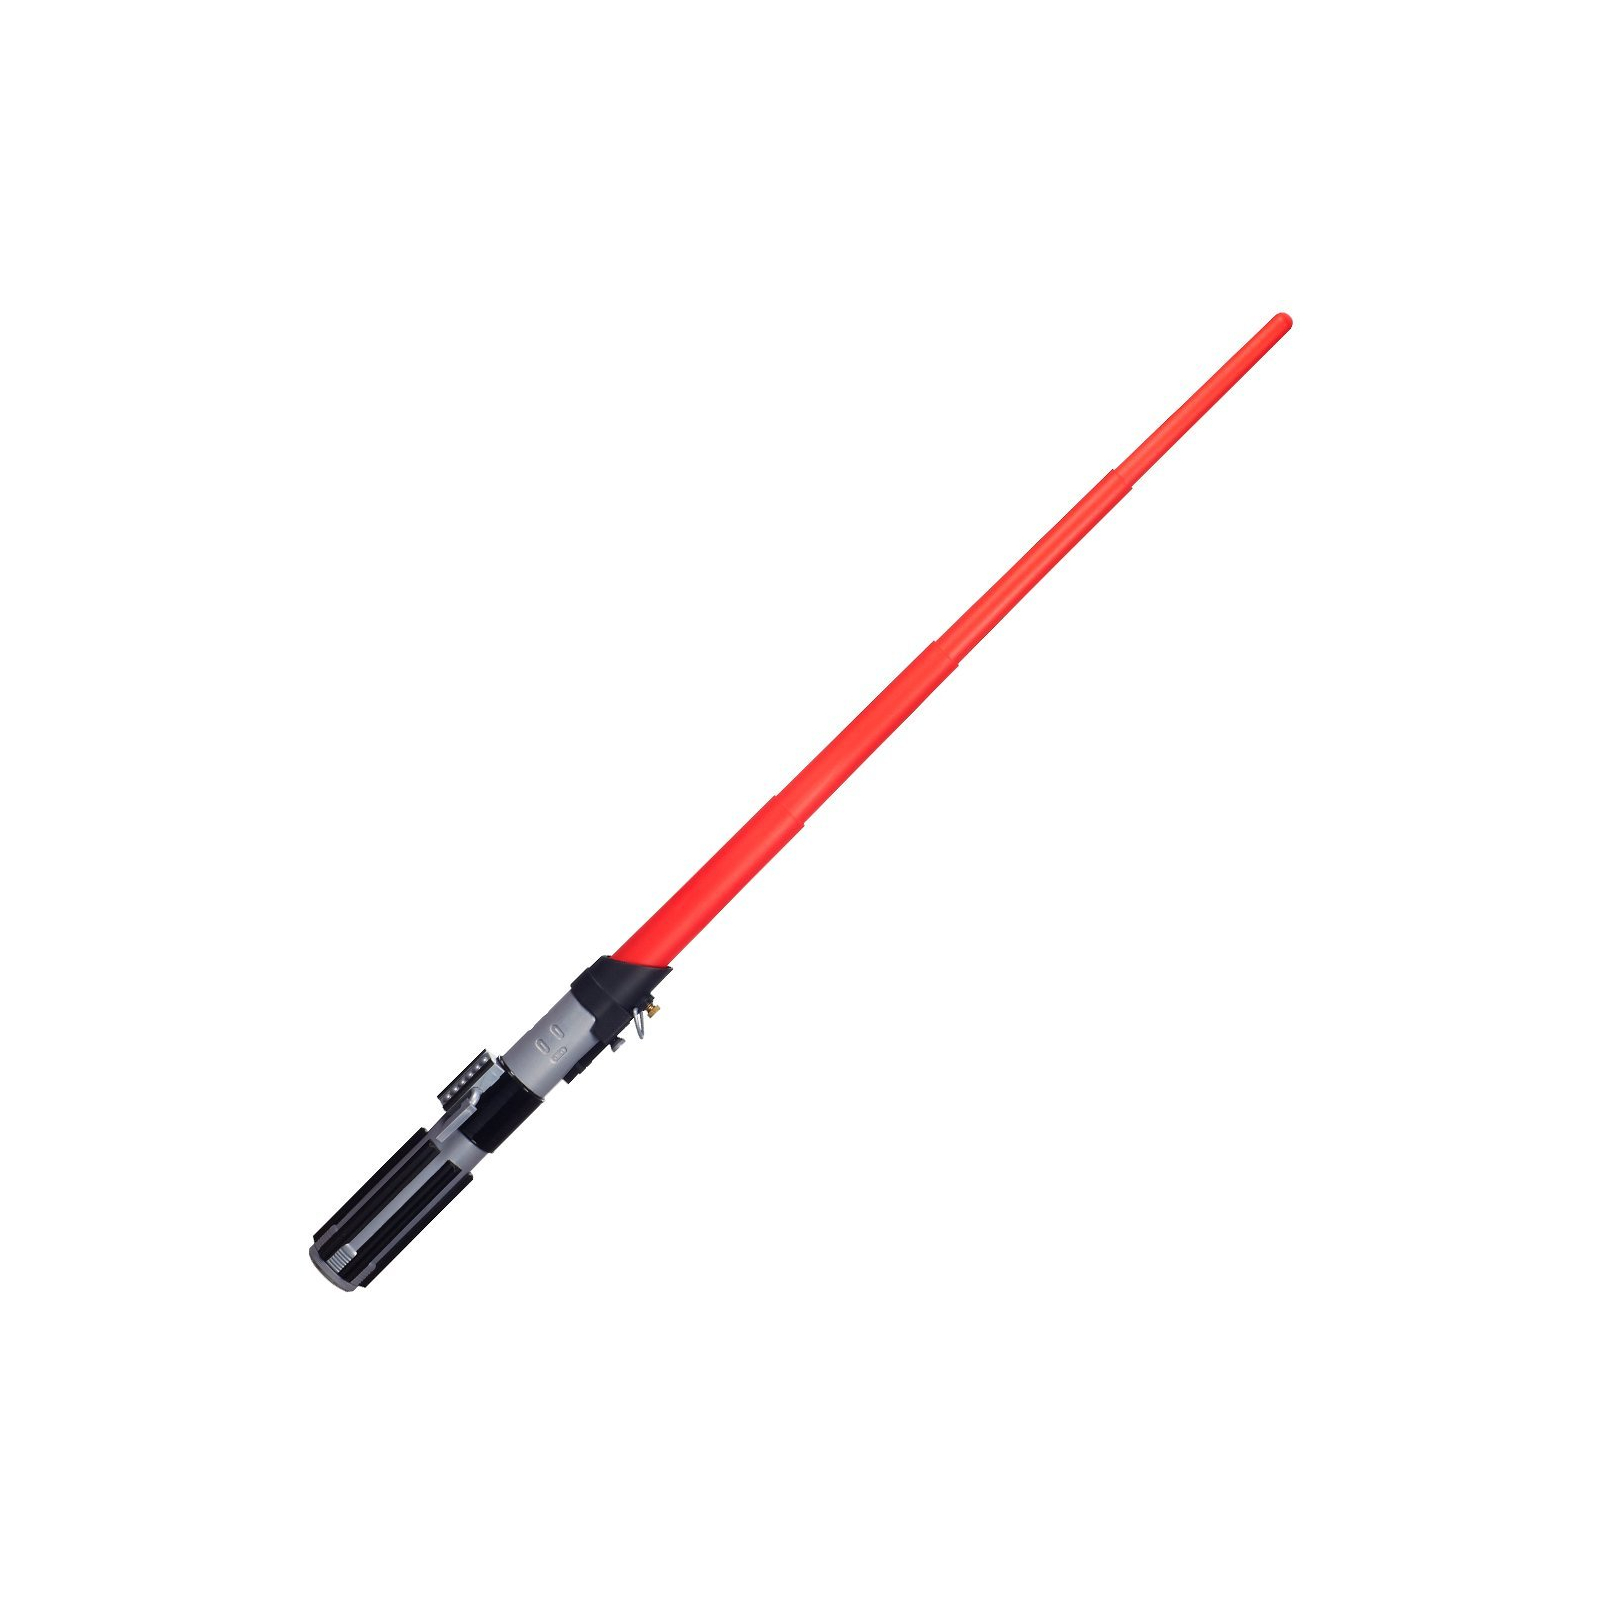 Игрушечное оружие Hasbro Star Wars Раздвижной меч Звездные войны Дарт Вейдер (A1189-01)